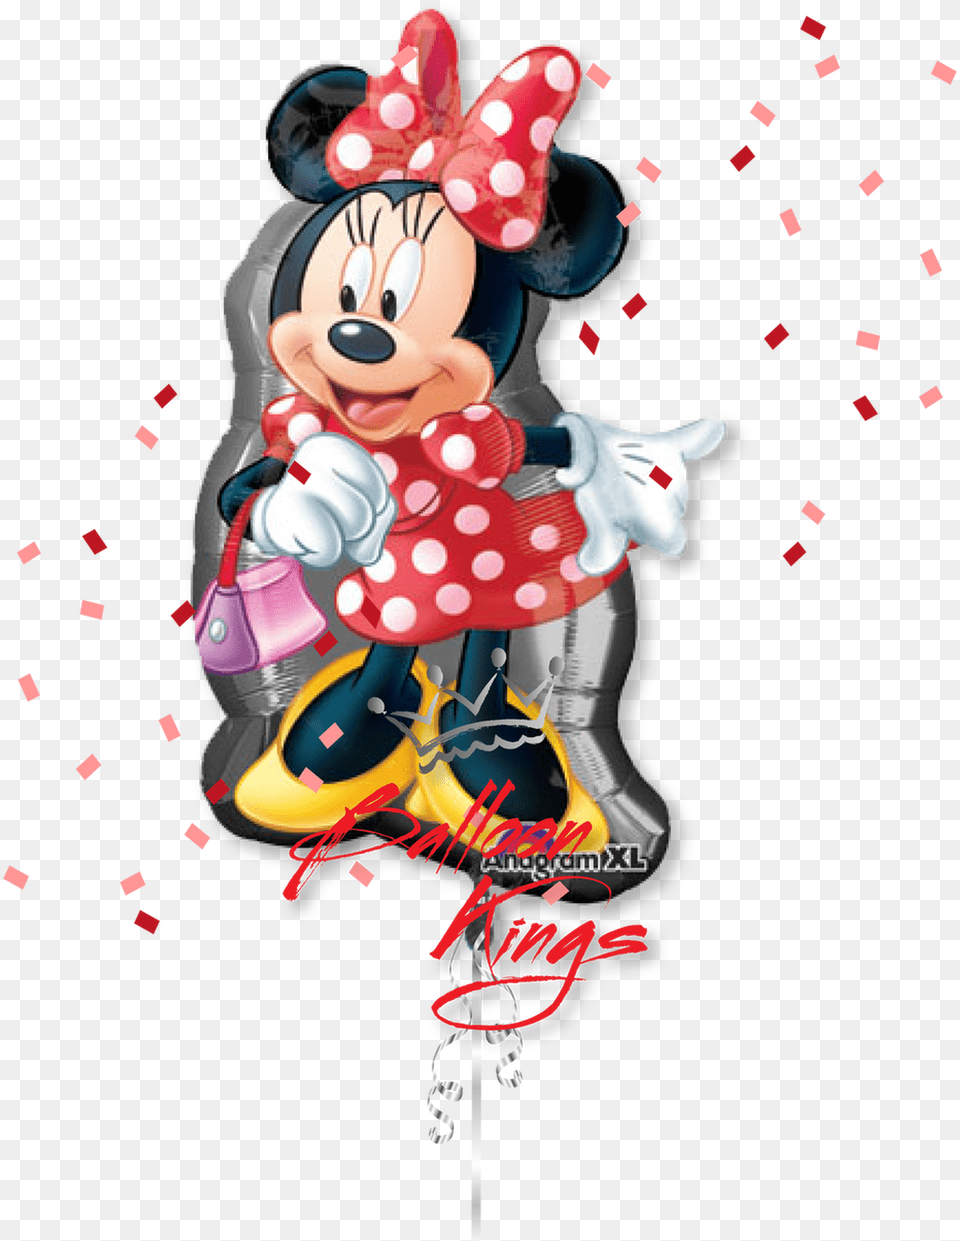 Transparent Minnie Mouse Head Minnie Mouse Dancing, Book, Publication, Comics, Art Png Image